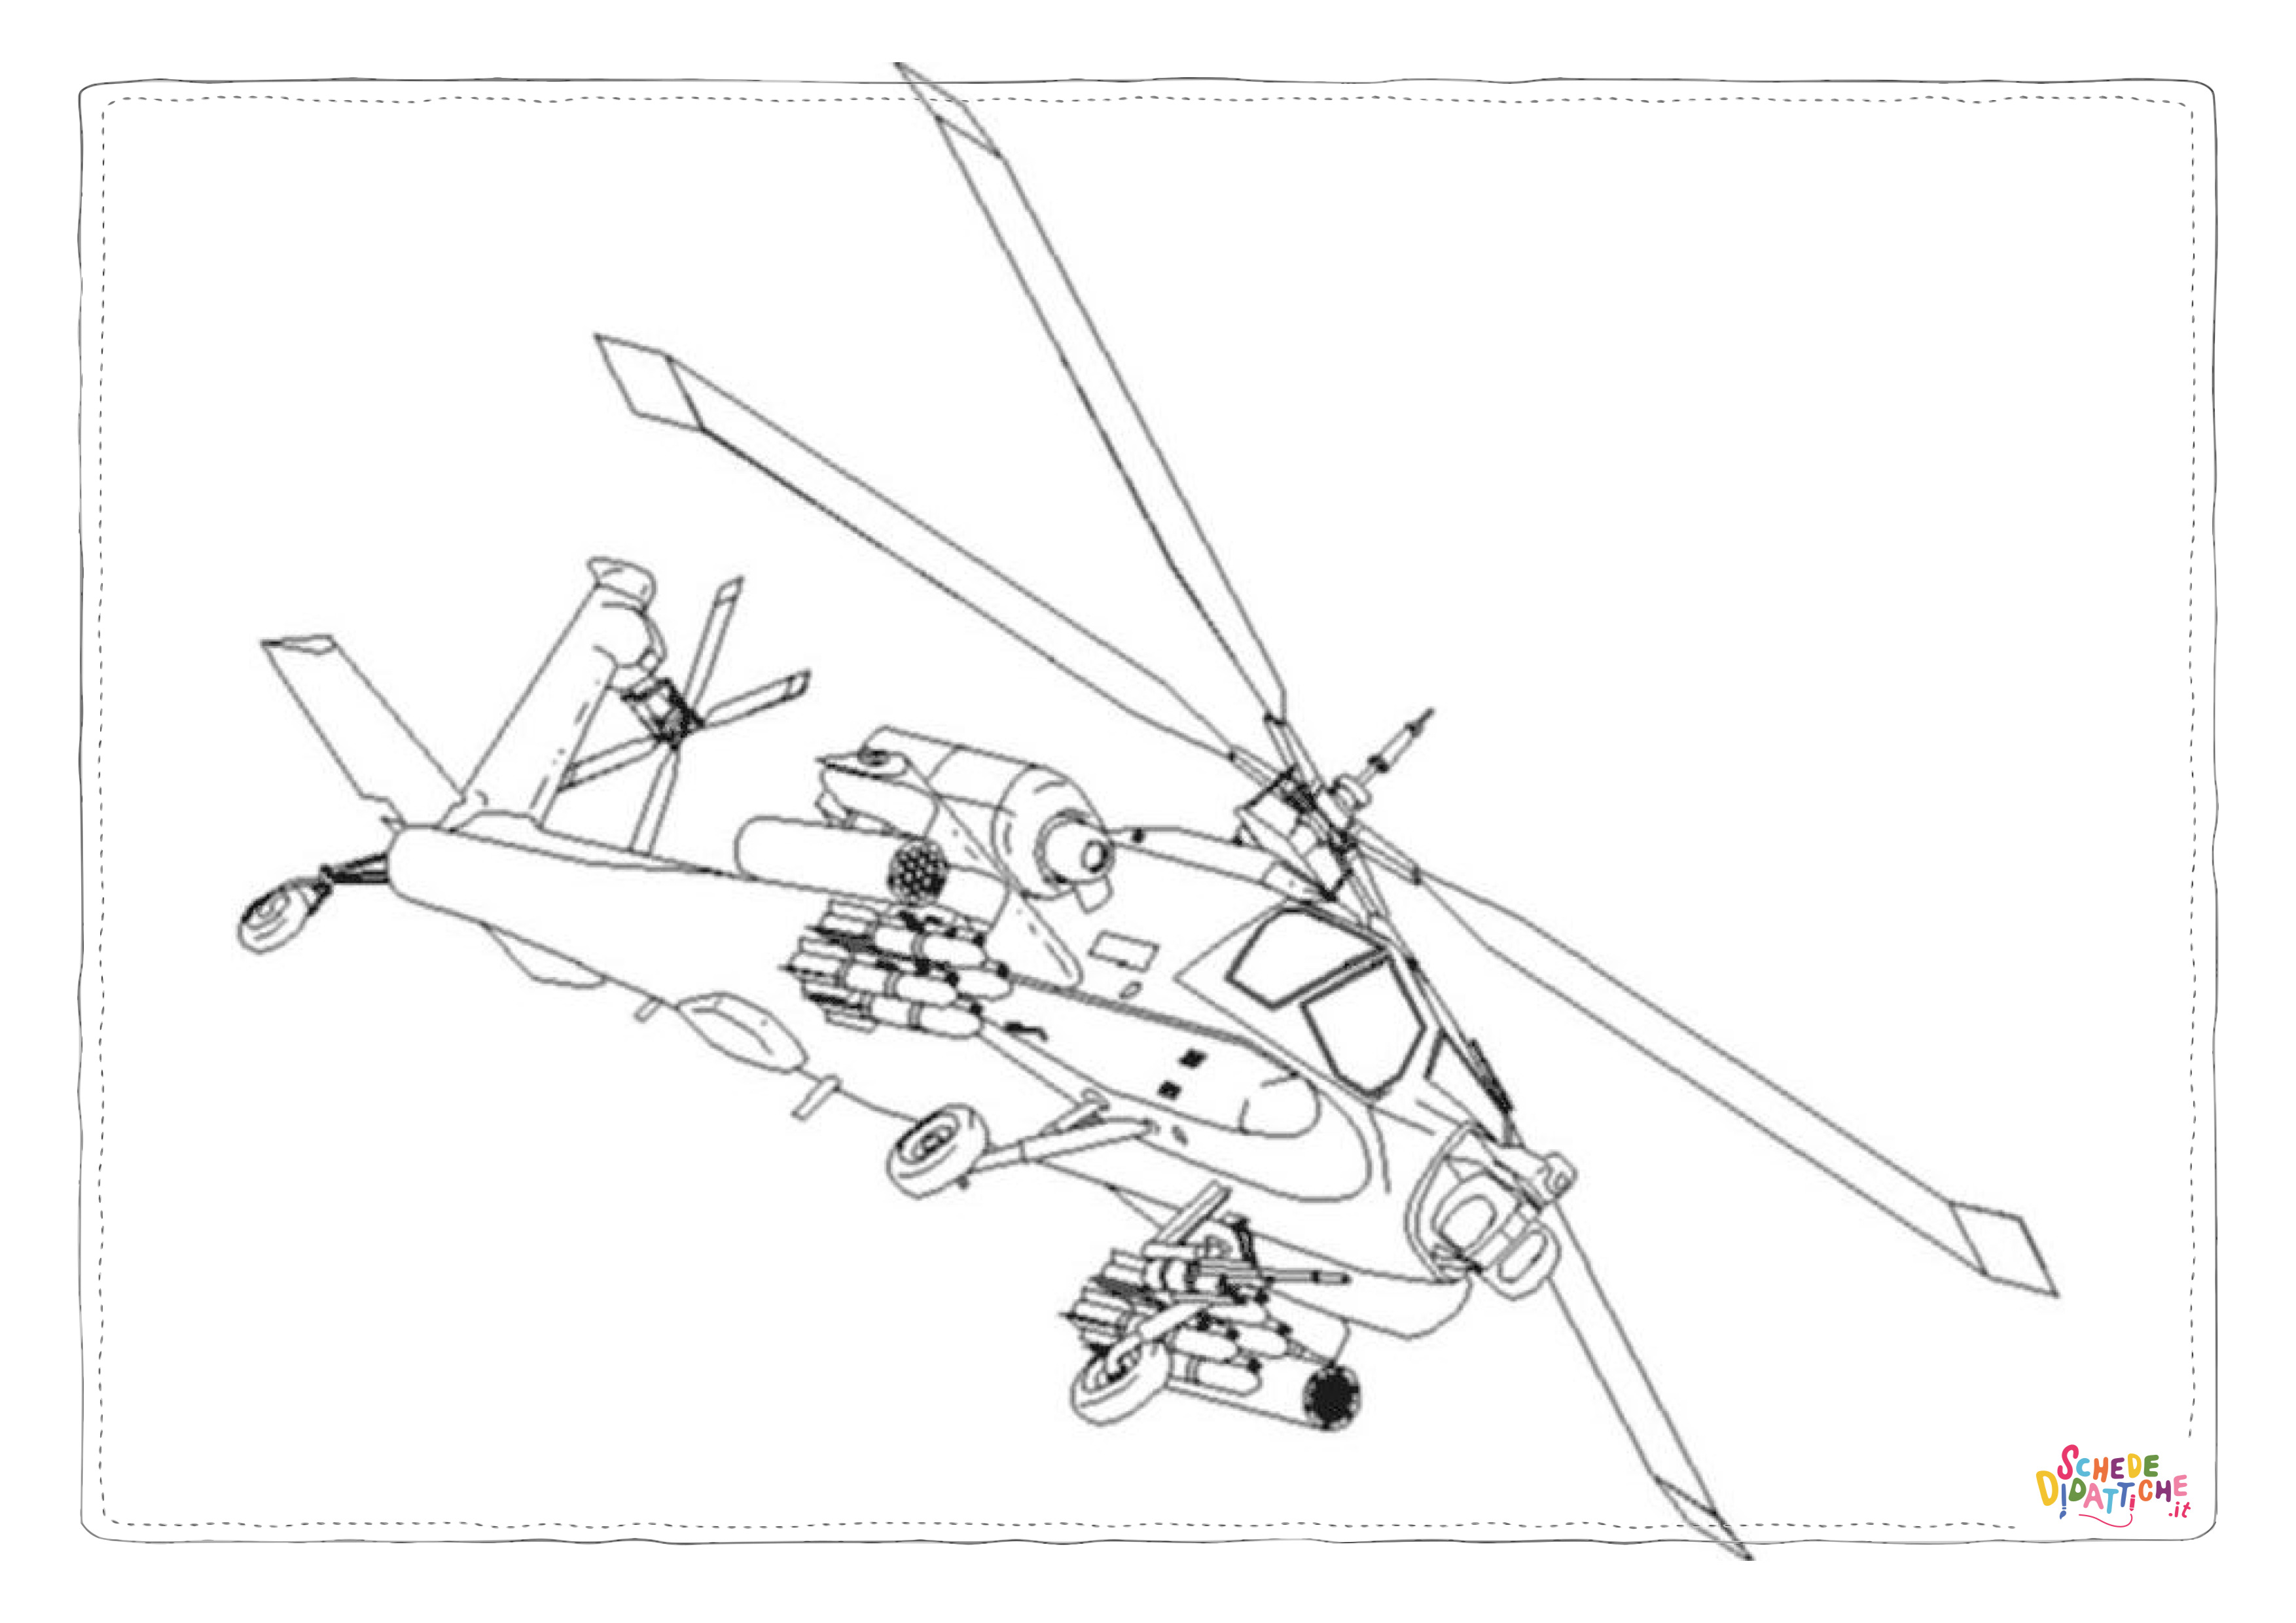 Disegno di elicottero militare da stampare e colorare 7